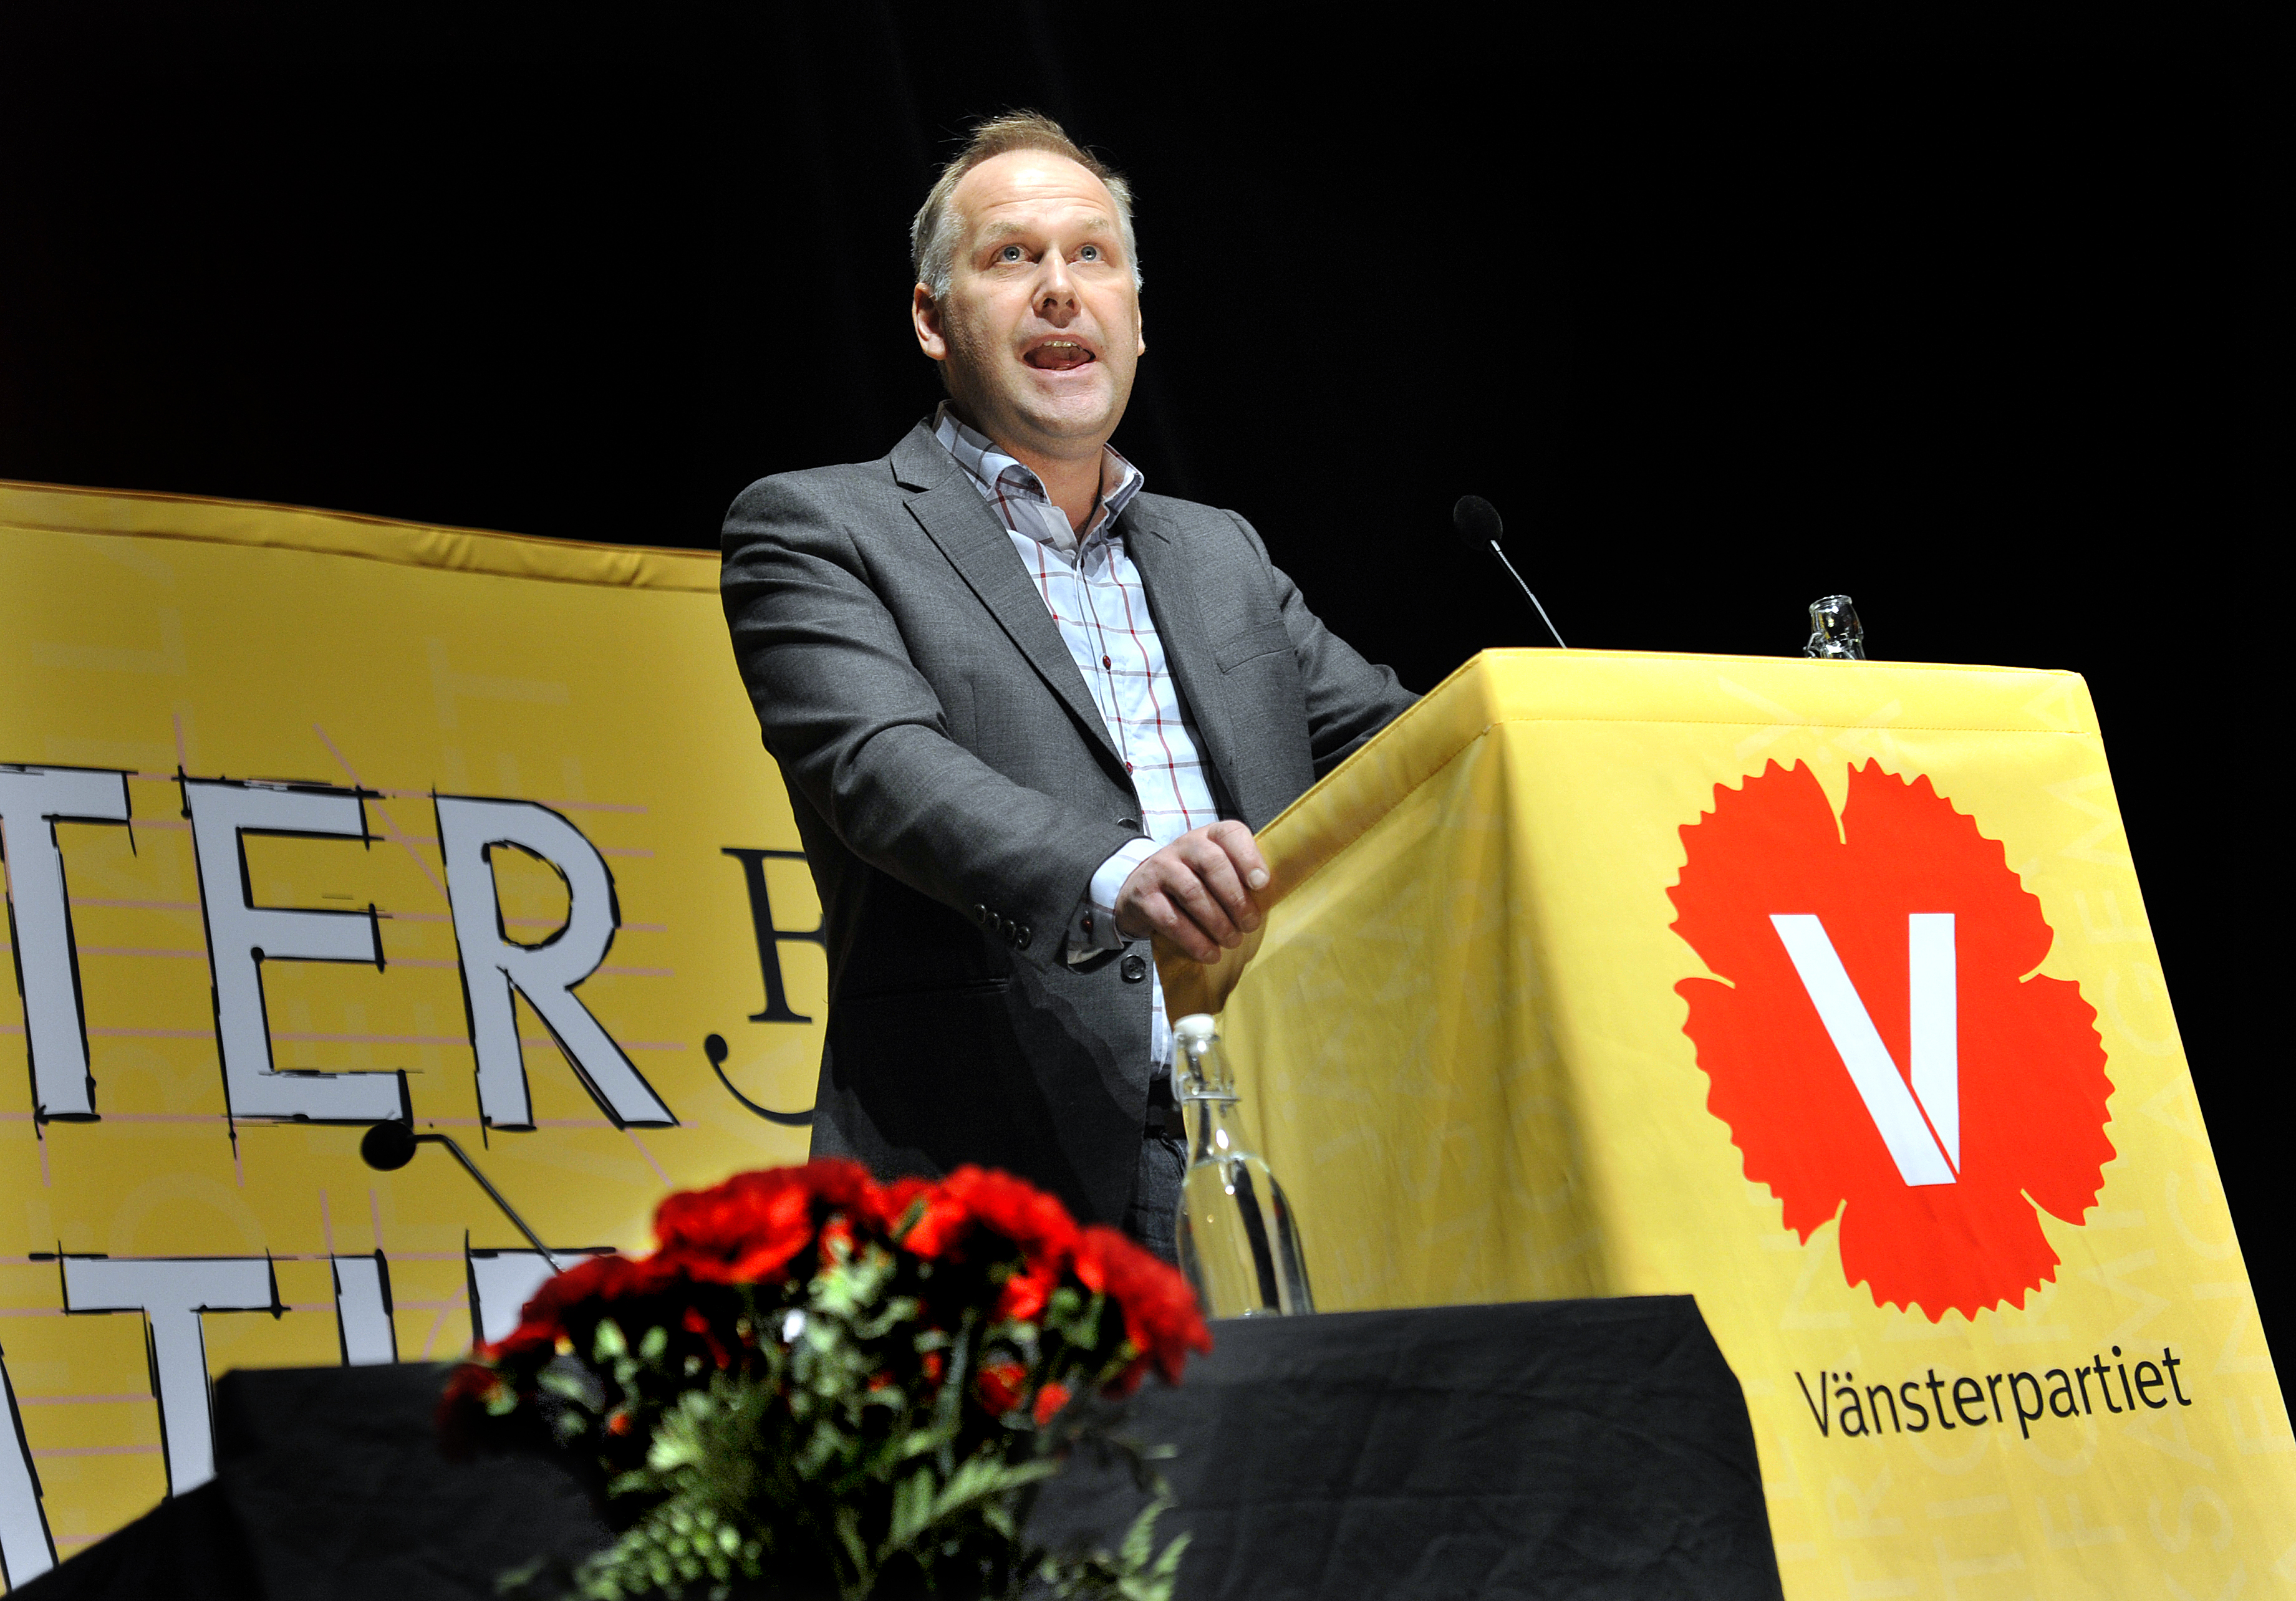 Vänsterpartiet med Jonas Sjöstedt i spetsen tapar 1,9 procentenheter.